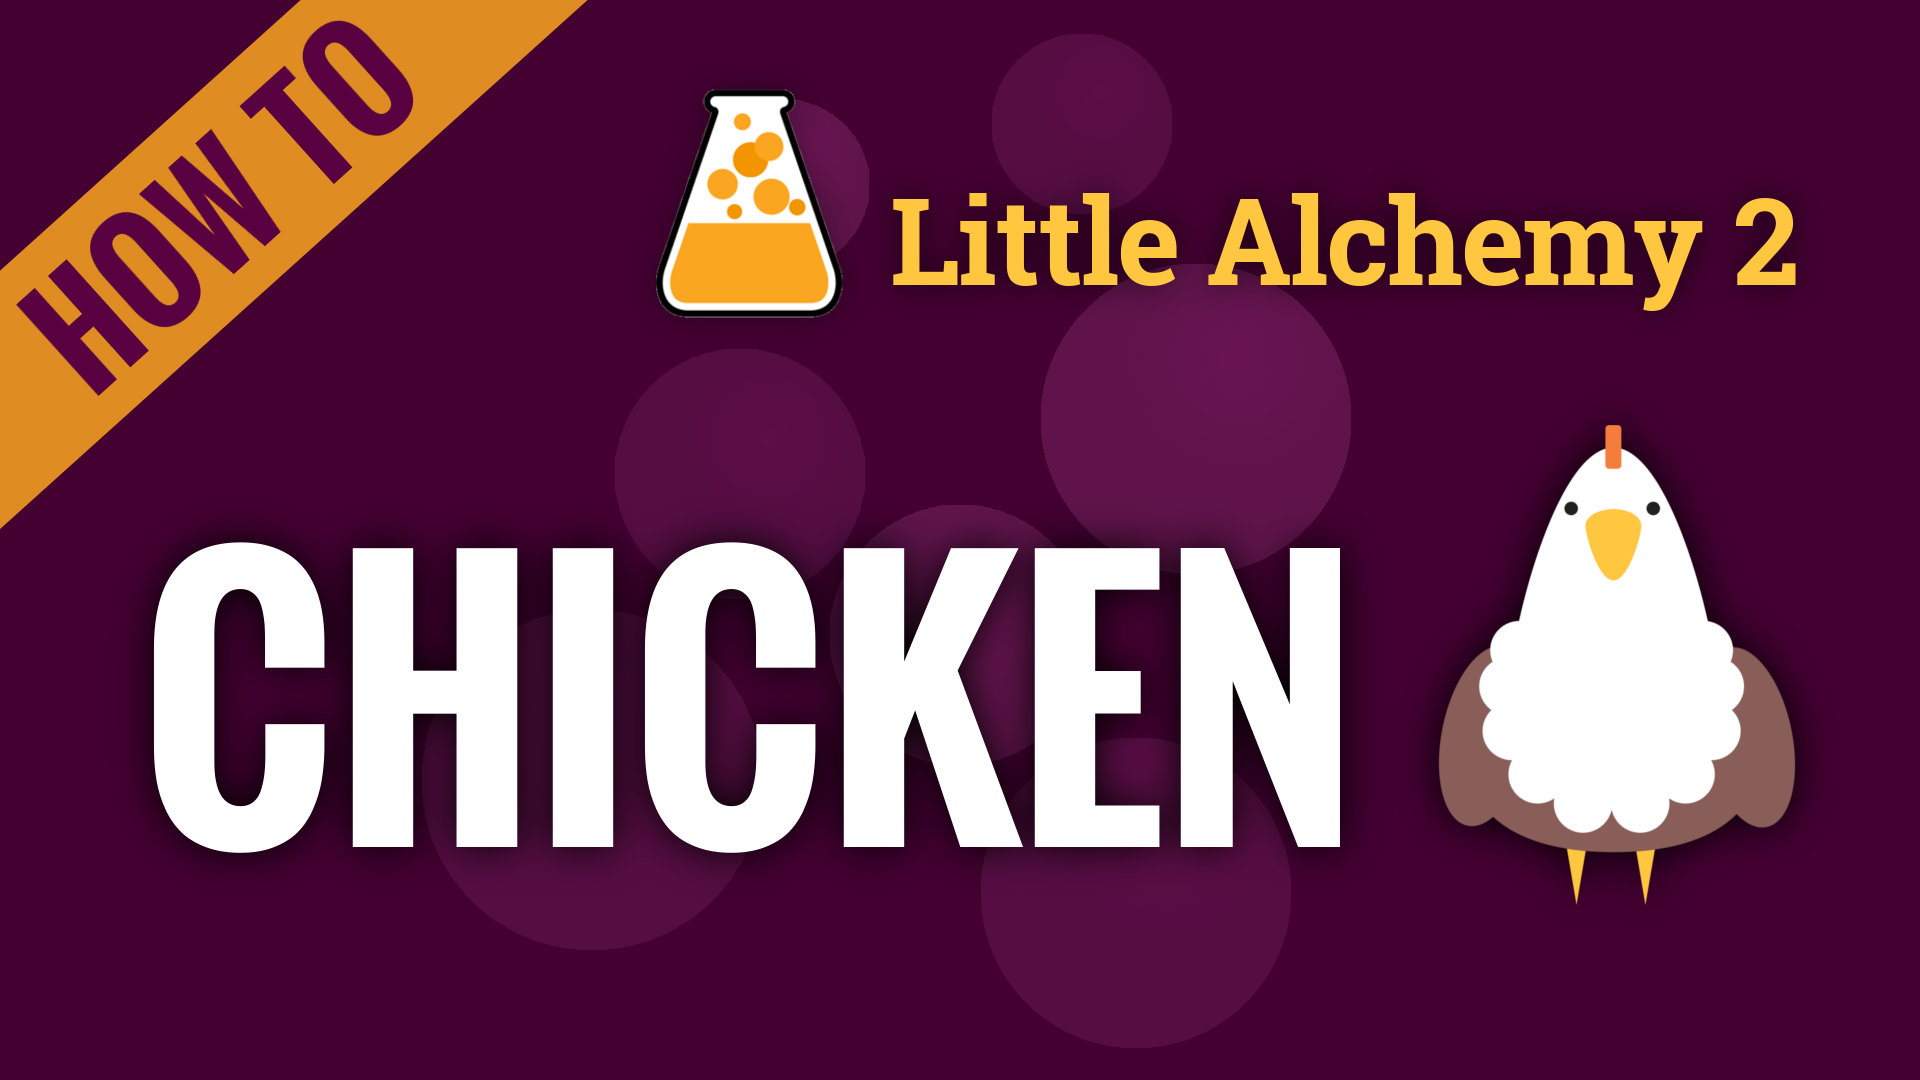 How To Make Chicken Little Alchemy 2